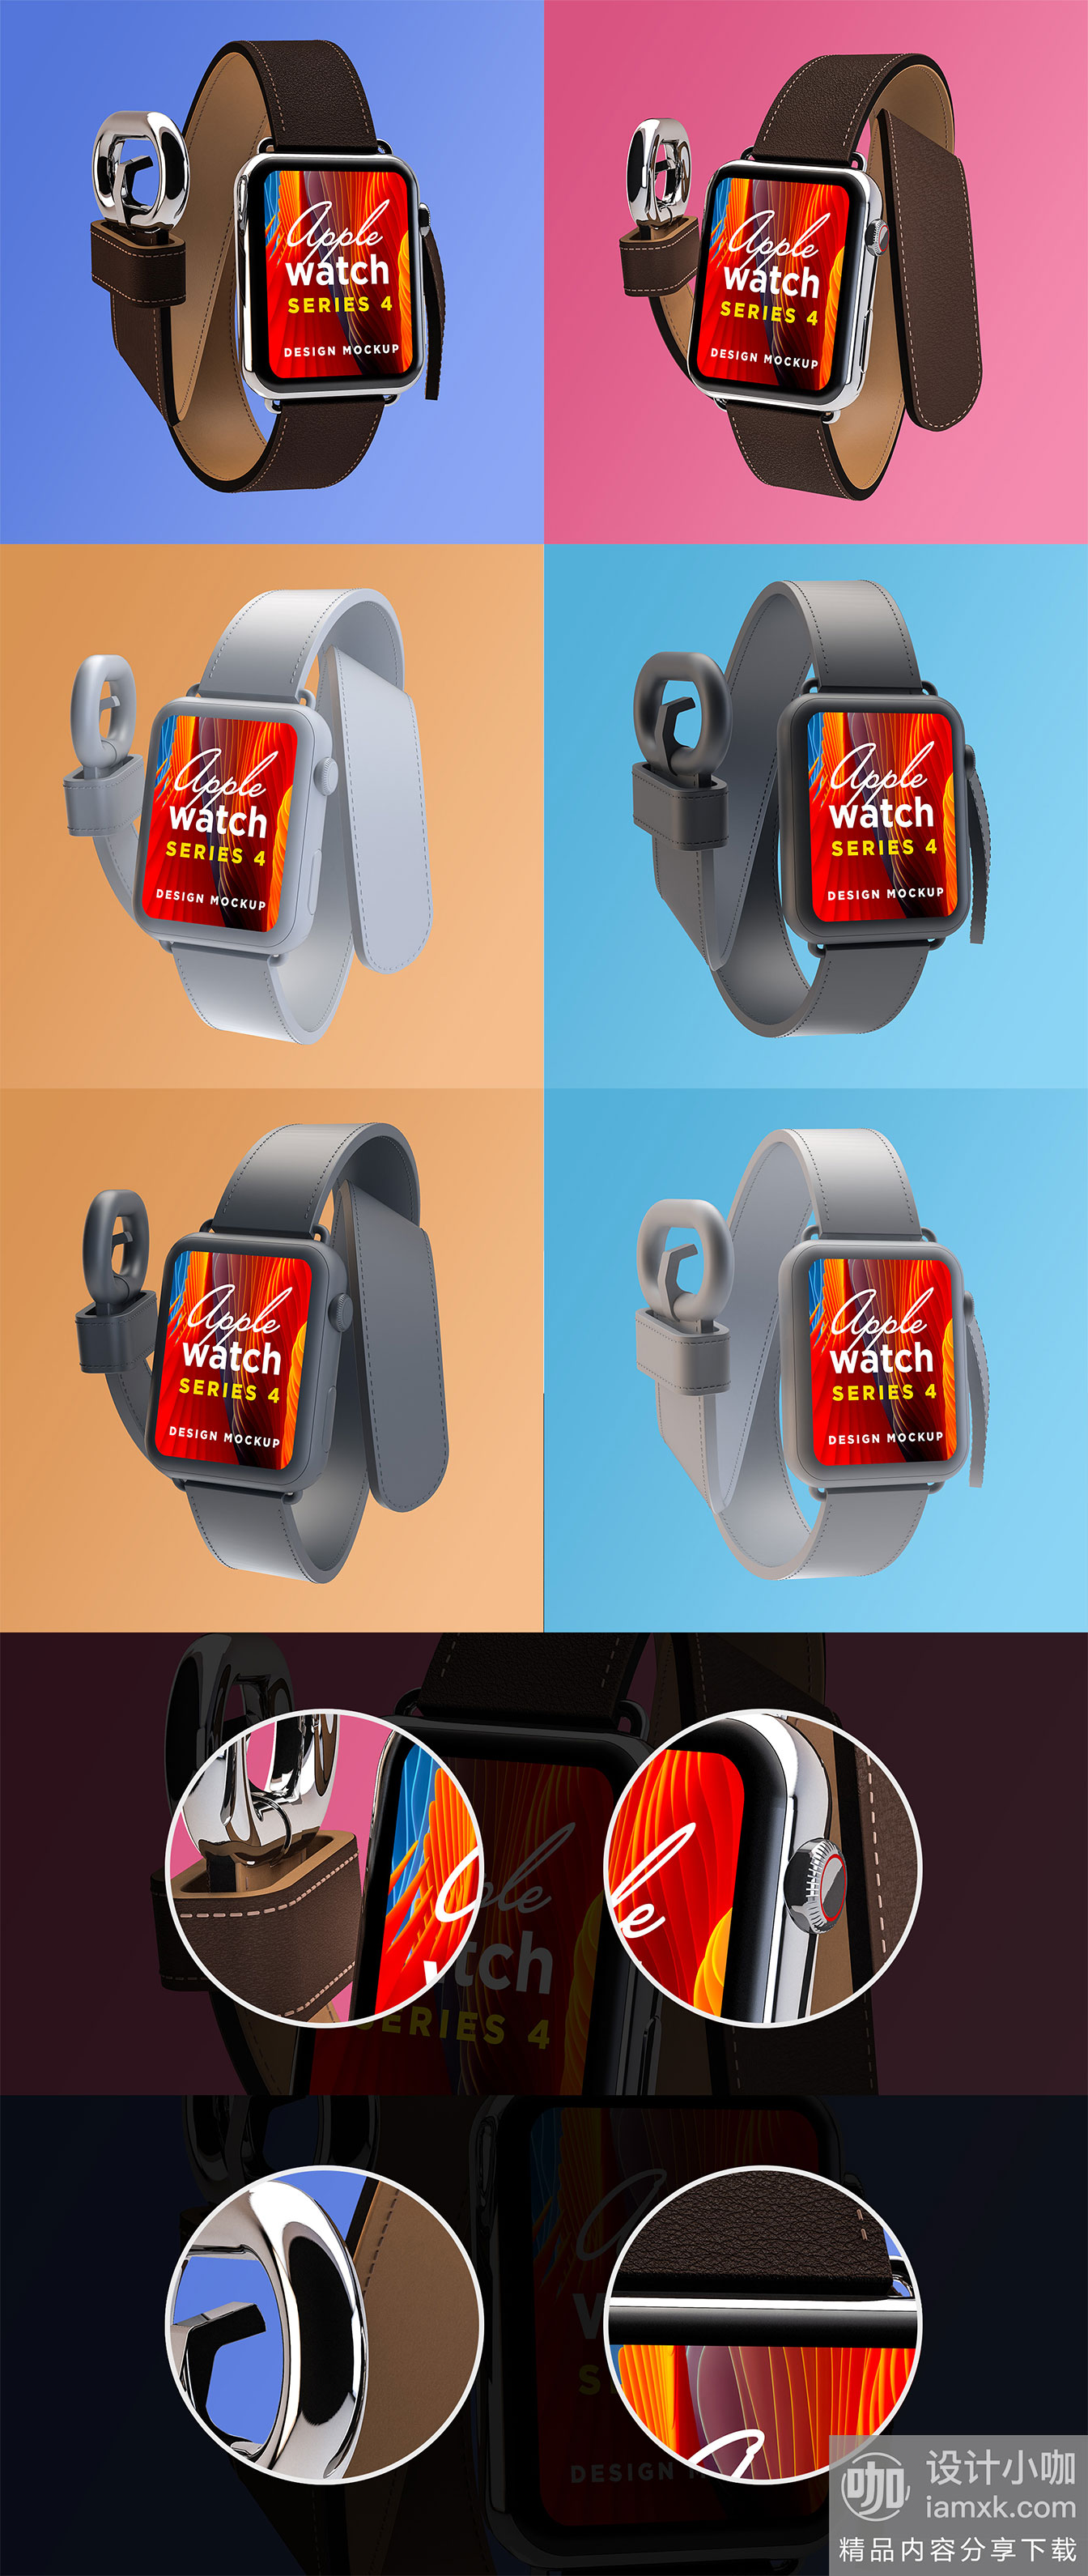 16设计网下午茶：Apple Watch Series 4 Mockup样机下载